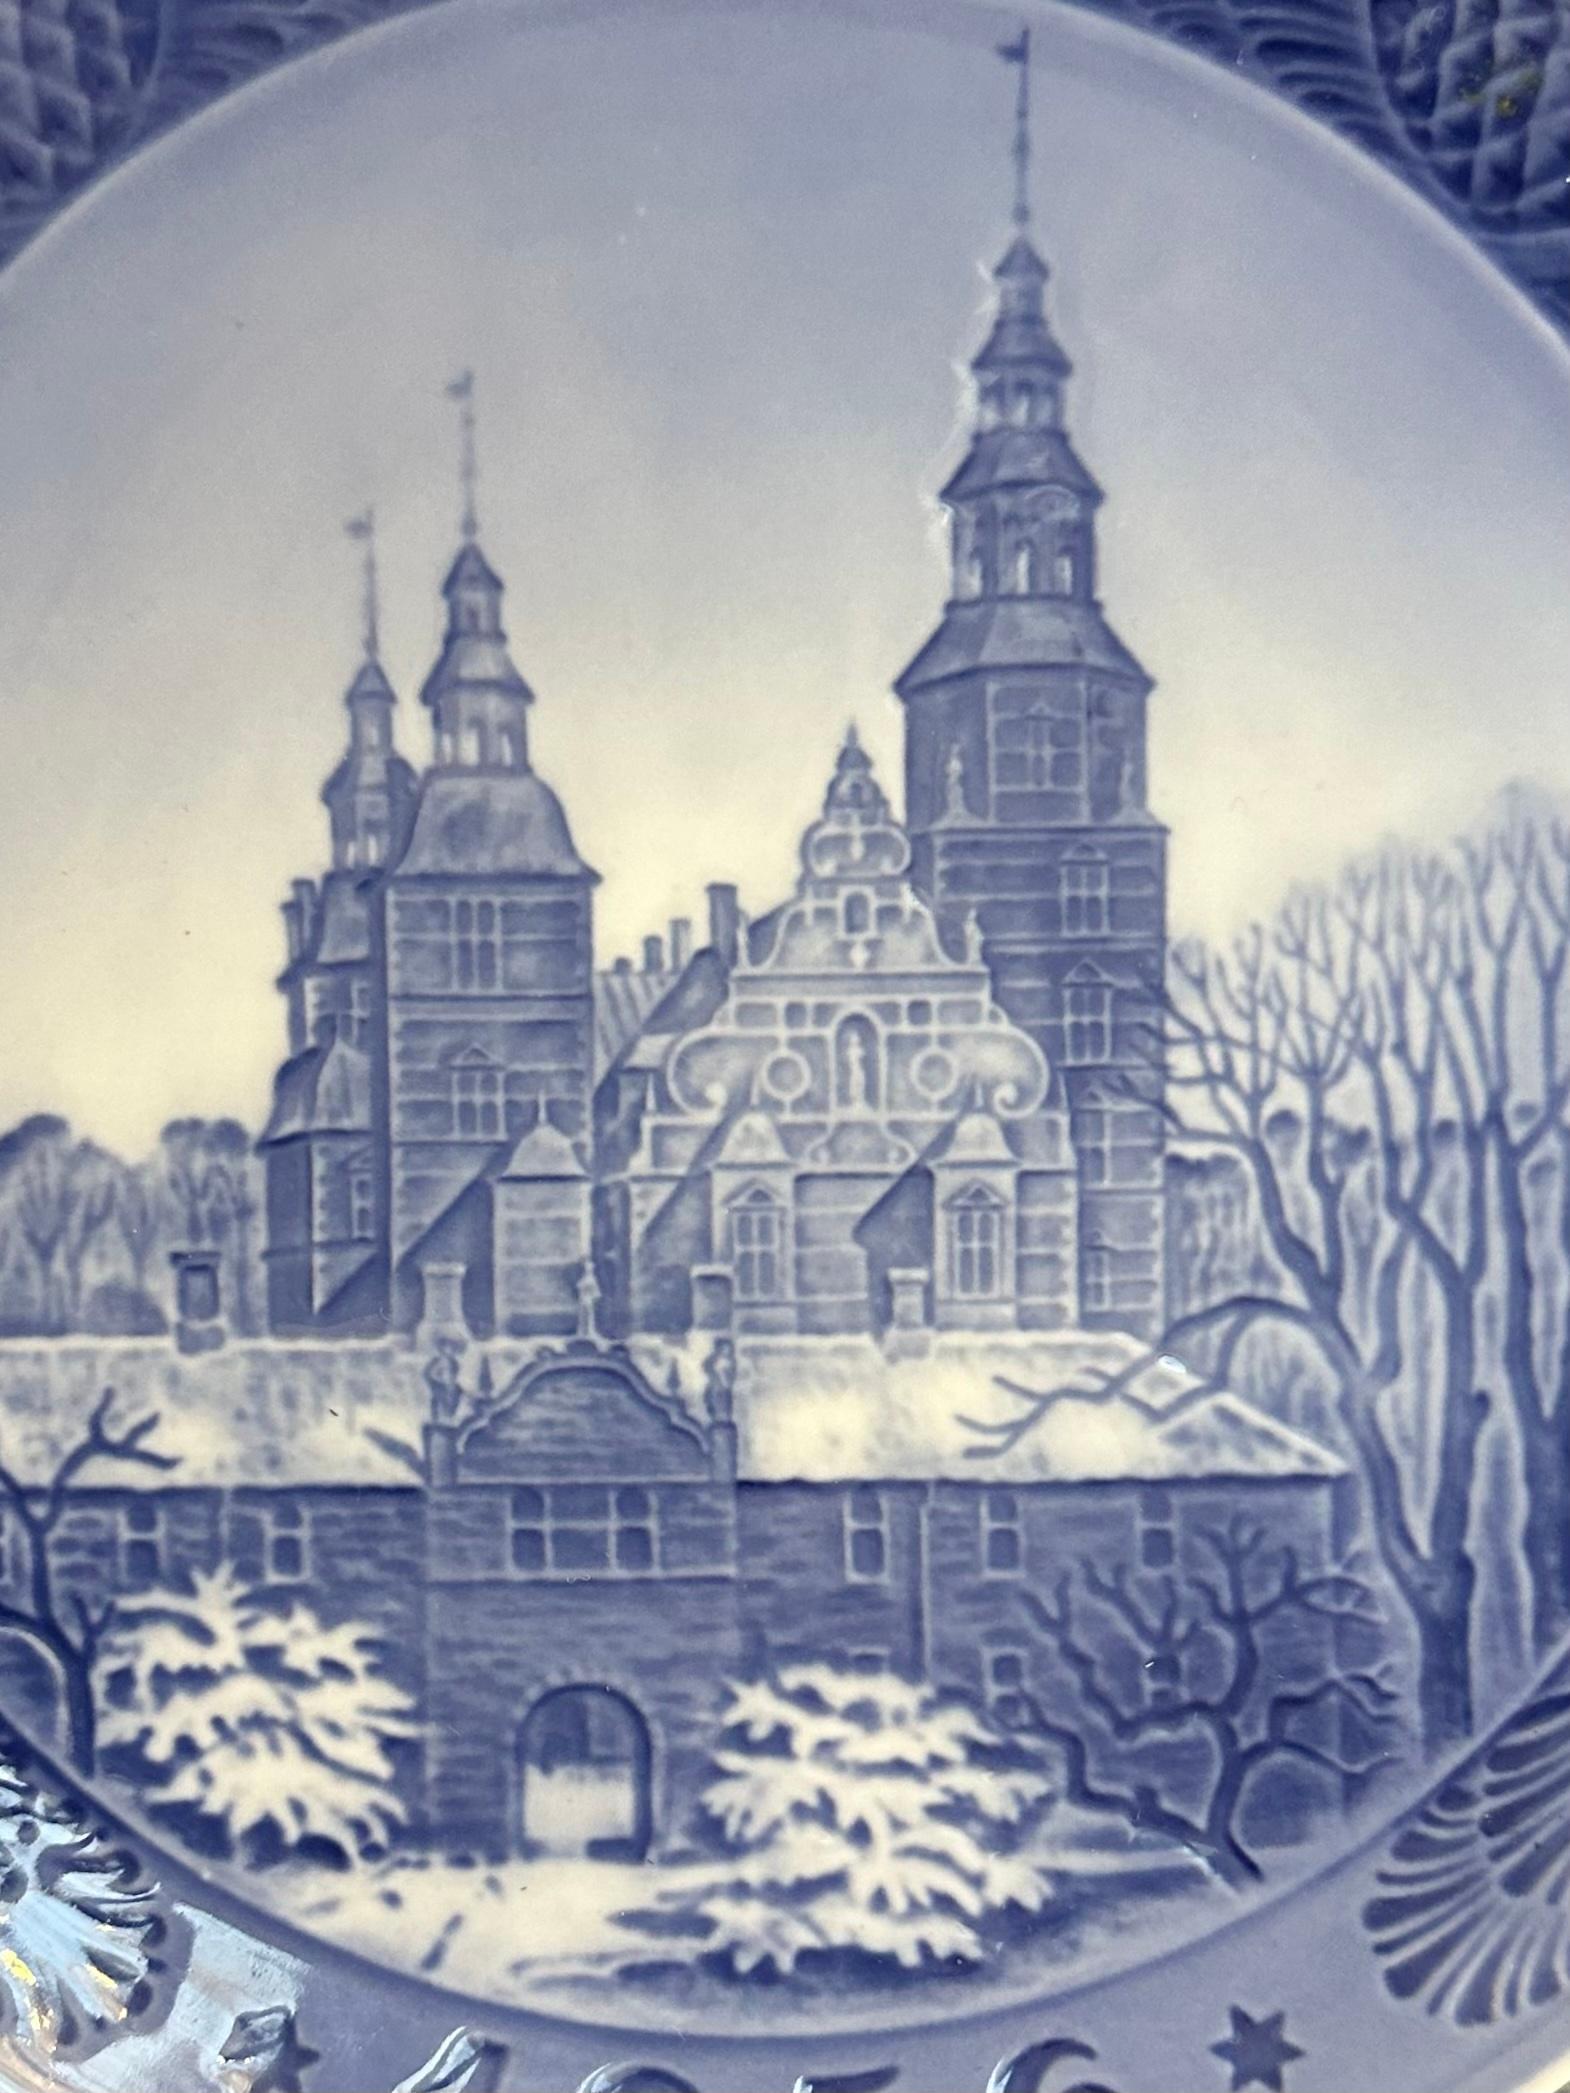 Porcelain 1956 Royal Copenhagen Christmas Plate - Rosenborg Castle Designed by Kai Lange. For Sale